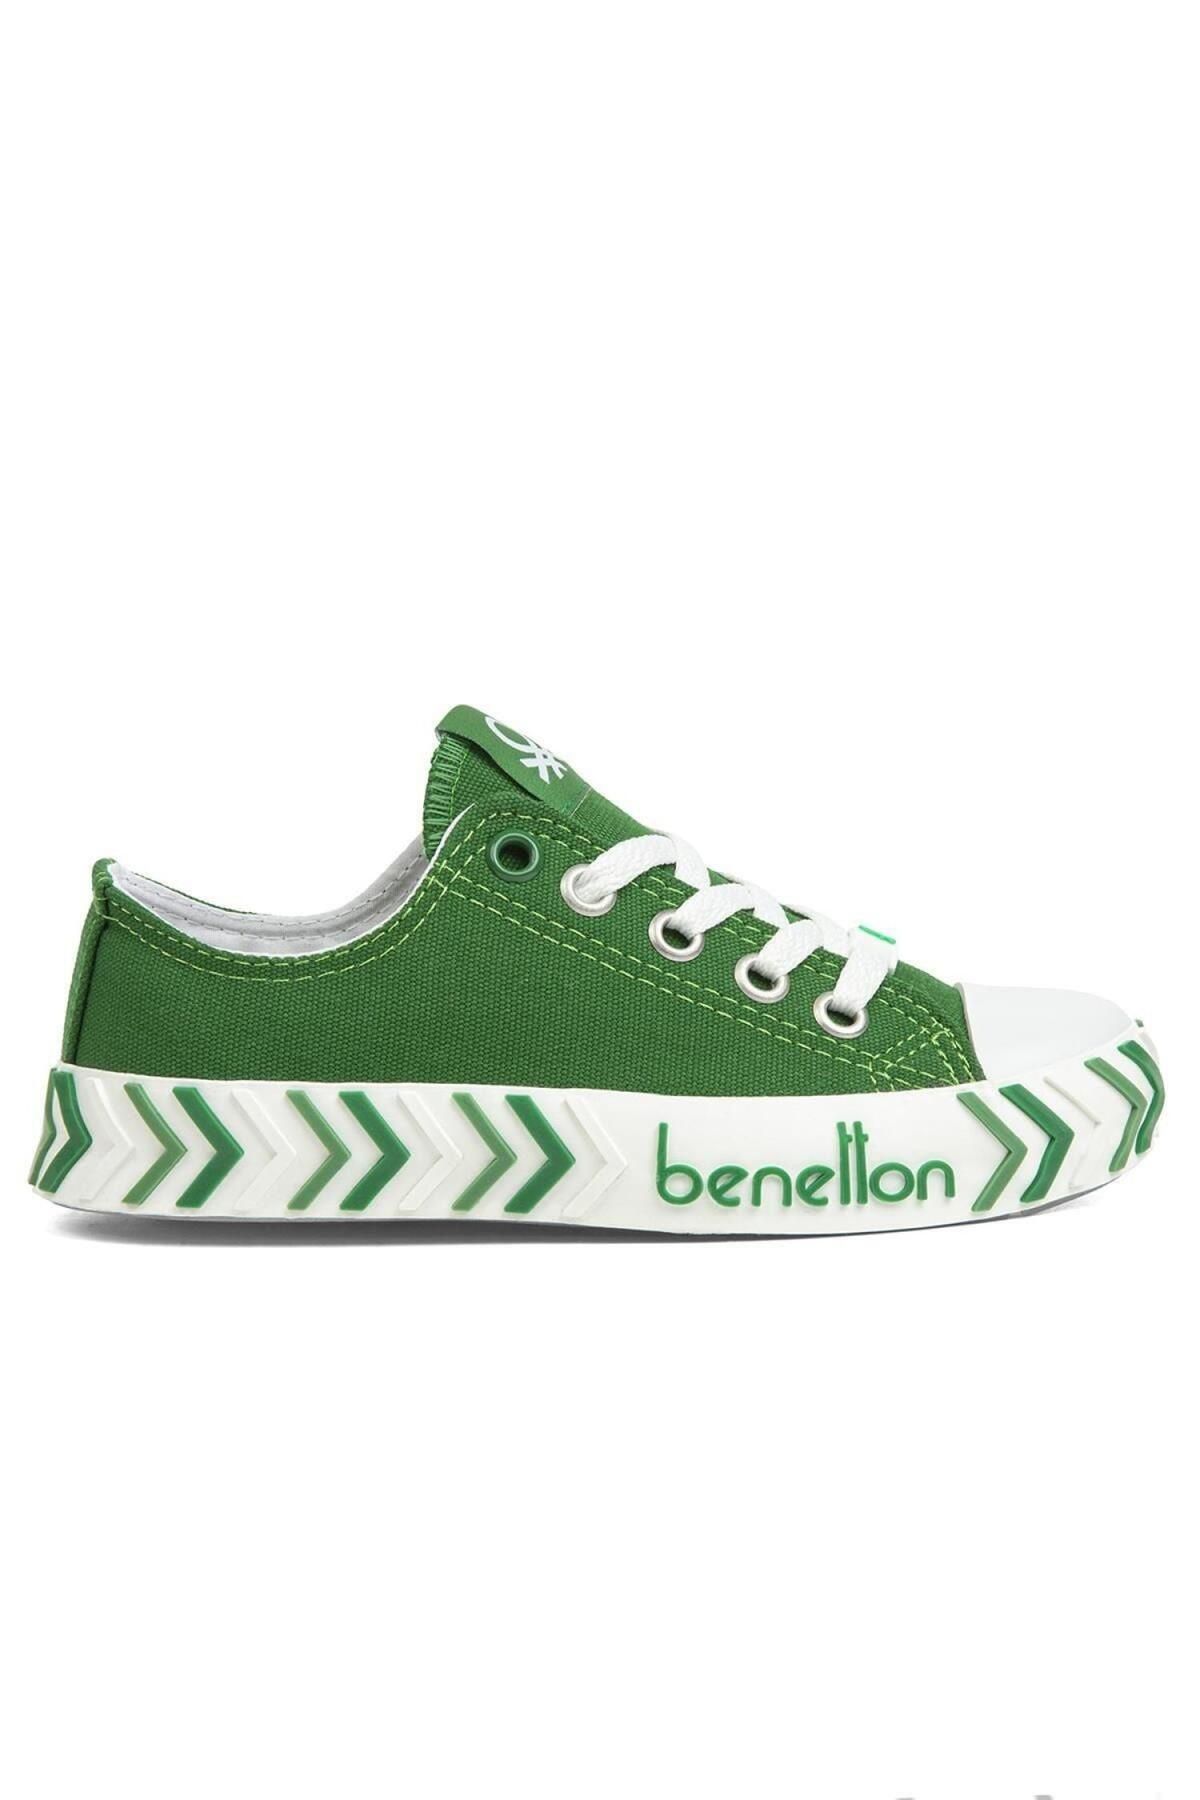 United Colors of Benetton Benetton Bn-30624 Kadın Spor Ayakkabı